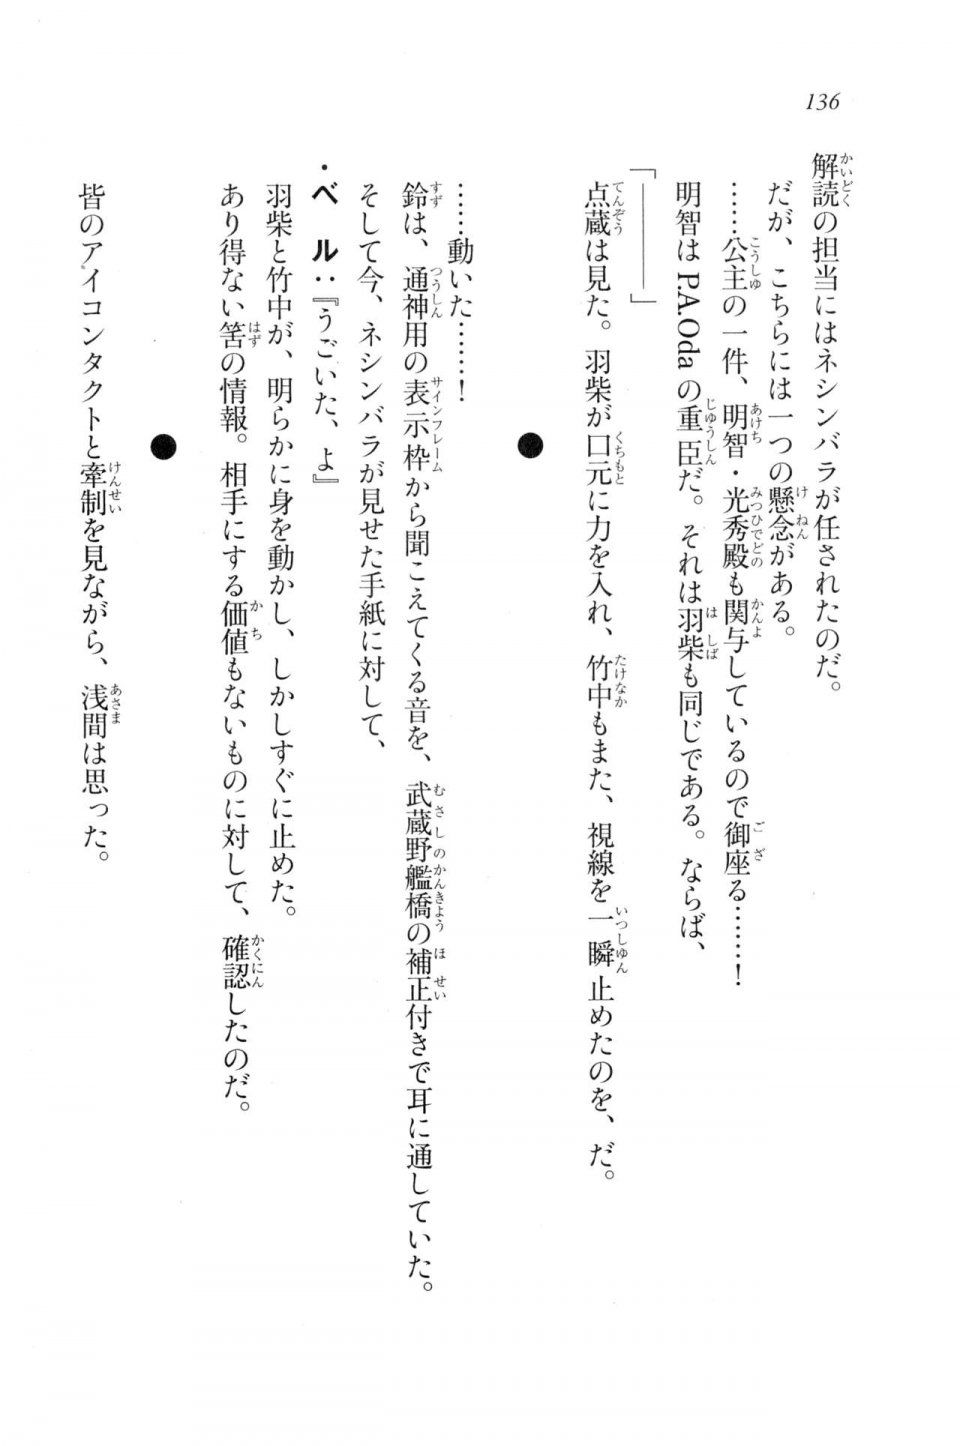 Kyoukai Senjou no Horizon LN Vol 20(8B) - Photo #136